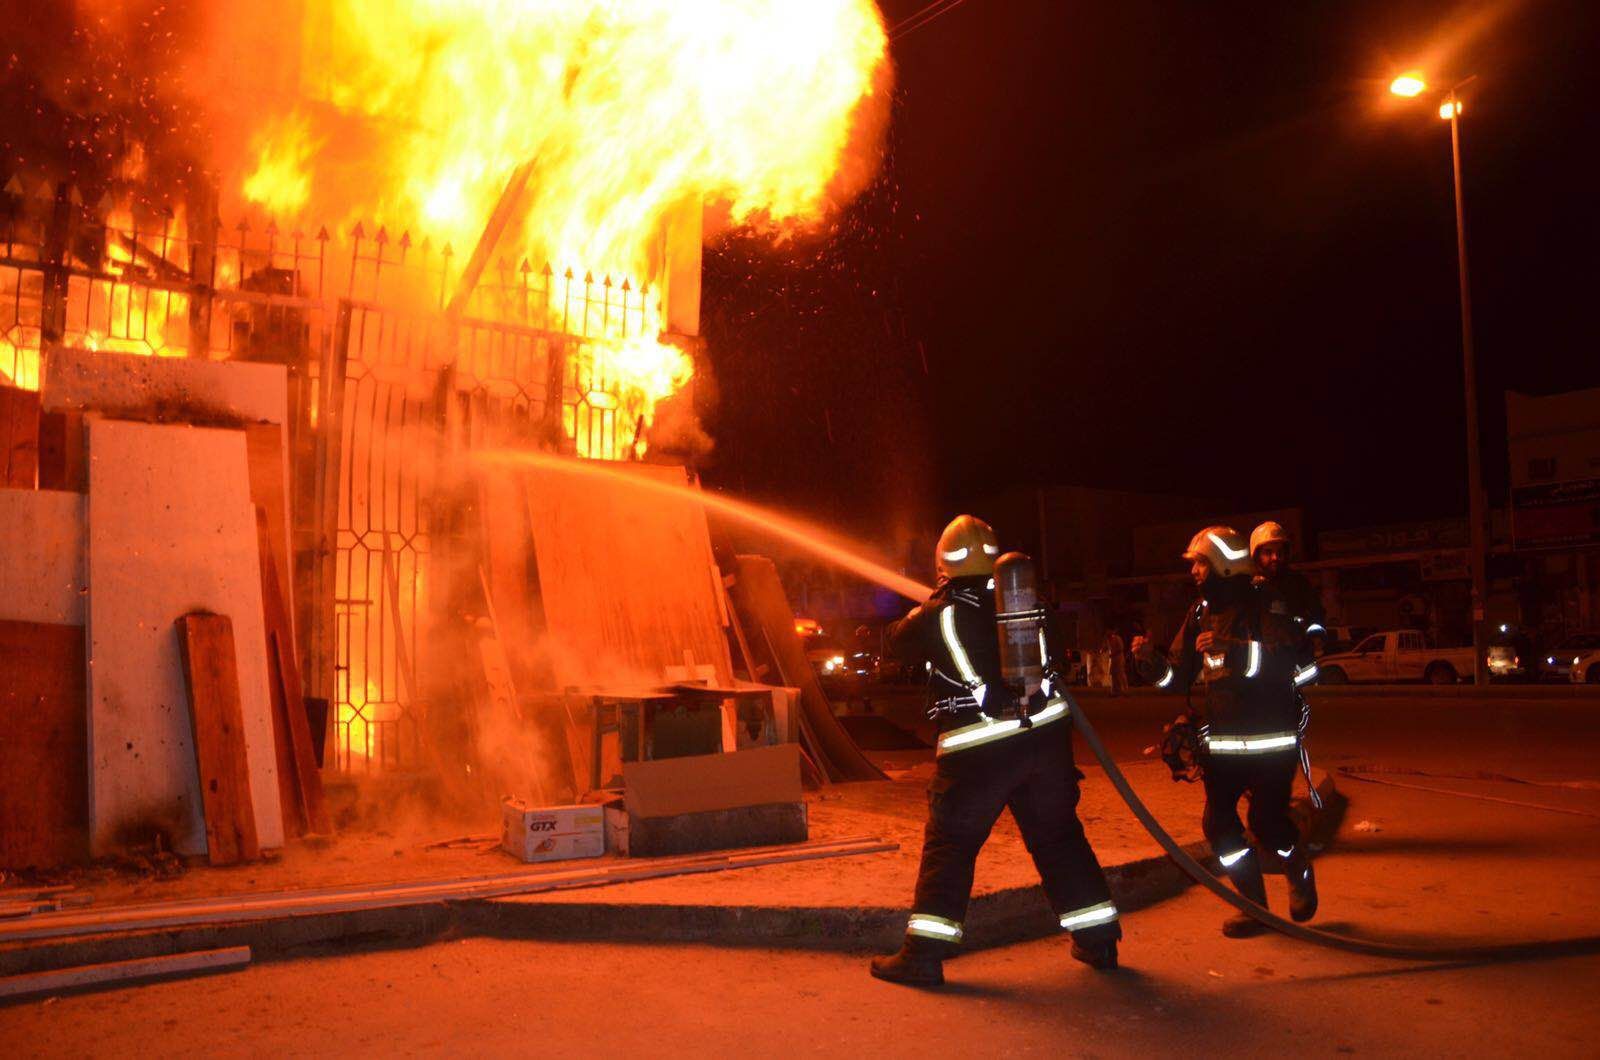   إندلاع حريق بمصنع بلاستيك بالمنطقة الصناعية بكوم أوشيم بالفيوم دون إصابات